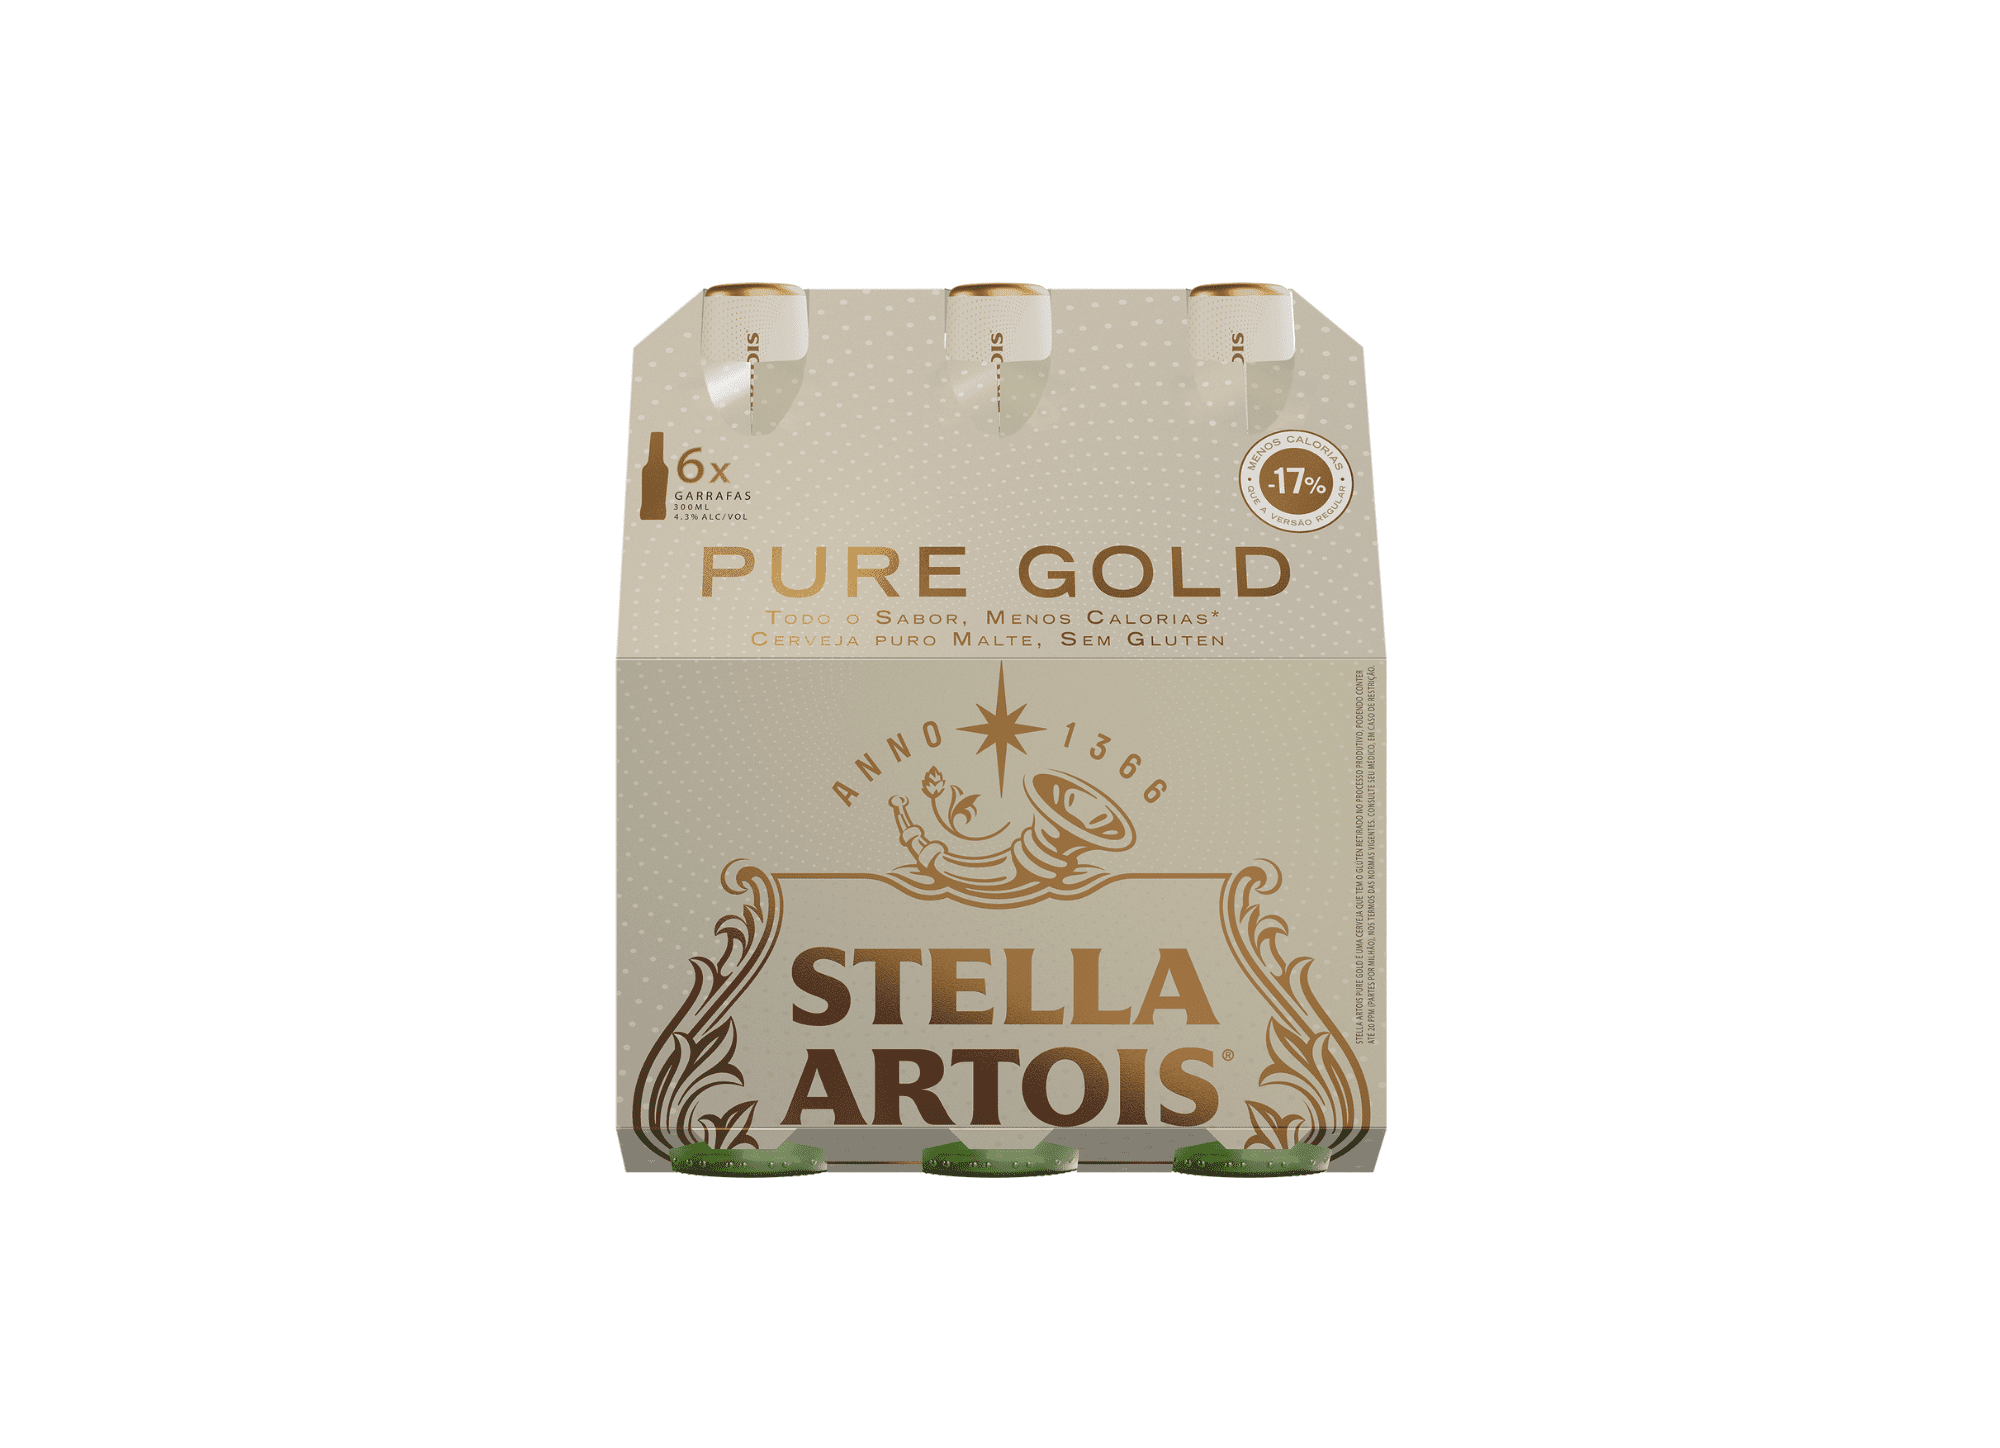 Featured image for “Stella Artois Pure Gold, com 17% menos calorias e sem glúten”